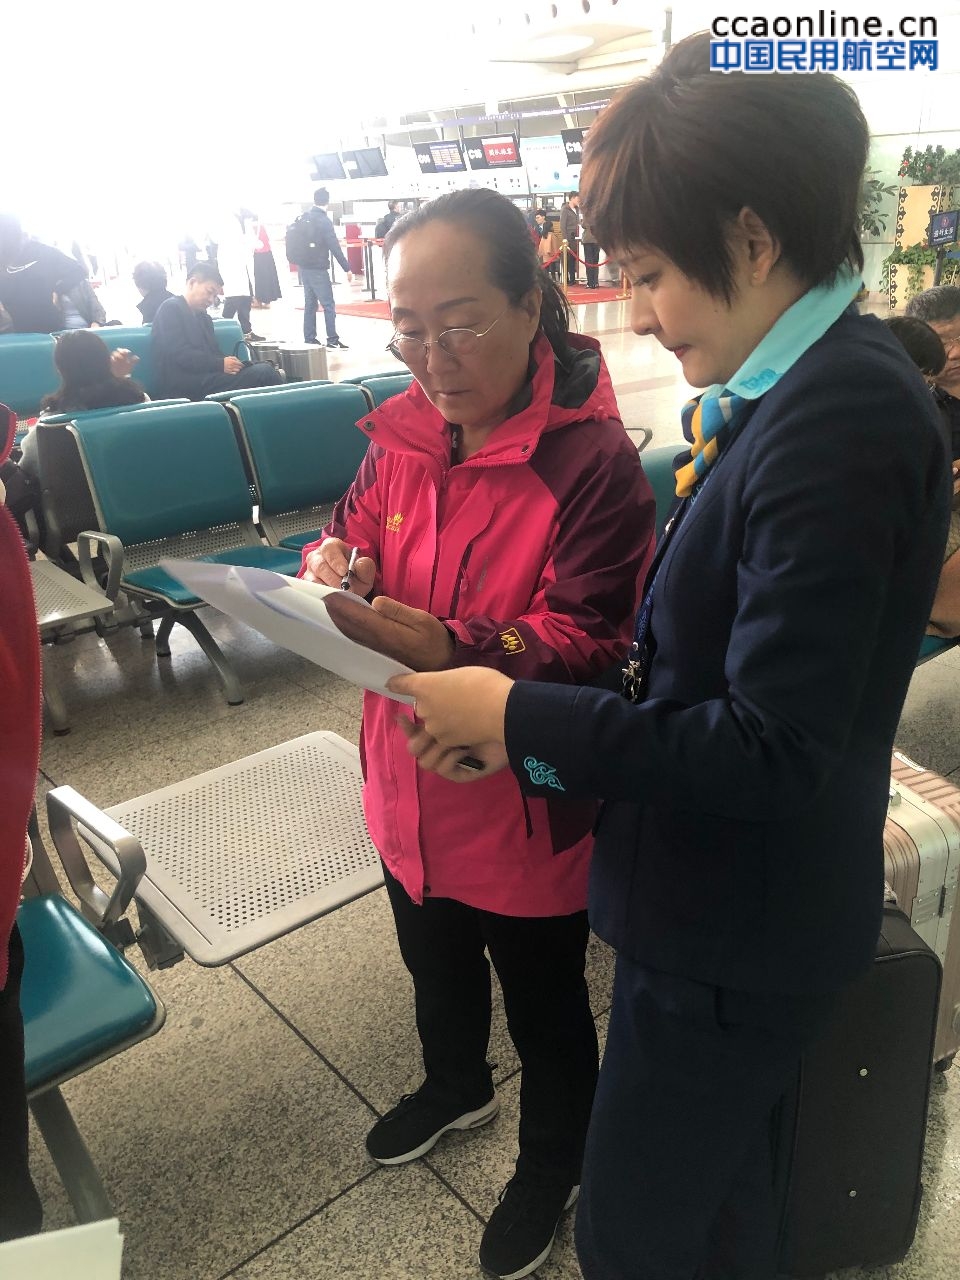 内蒙古民航机场地服分公司开展旅客对值机服务满意度调查